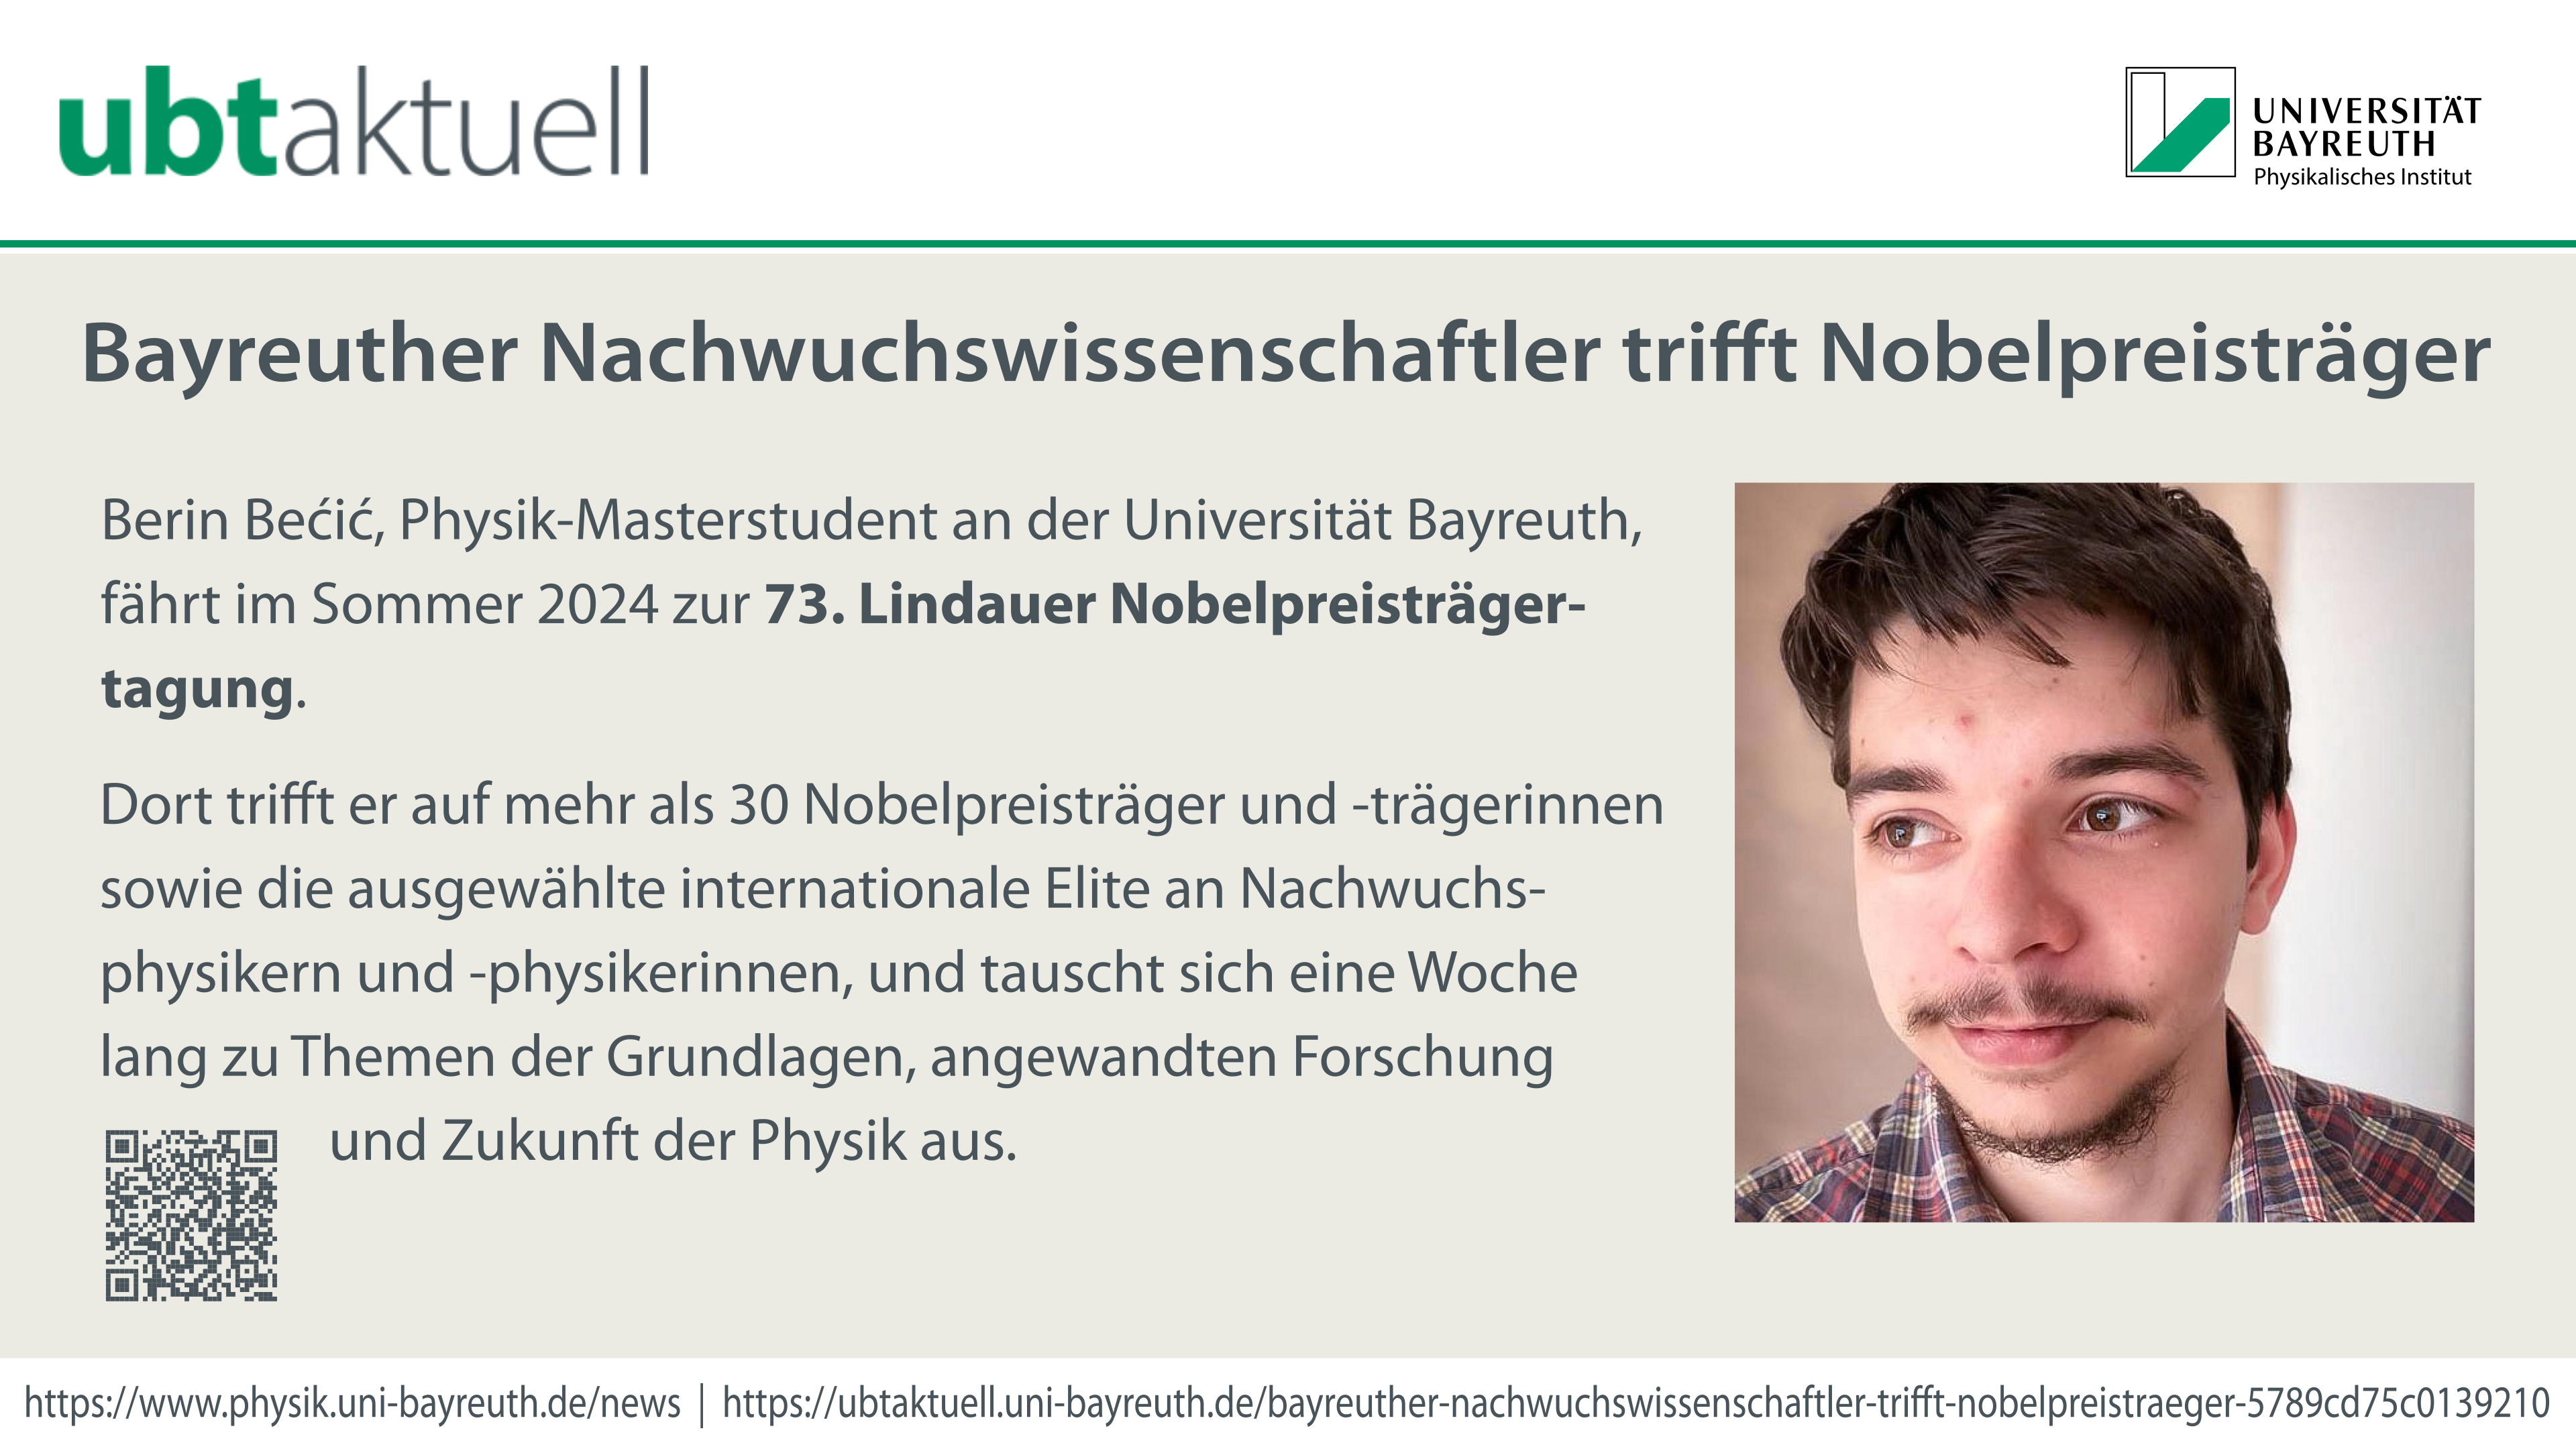 UBTaktuell - Bayreuther Nachwuchswissenschaftler trifft Nobelpreisträger